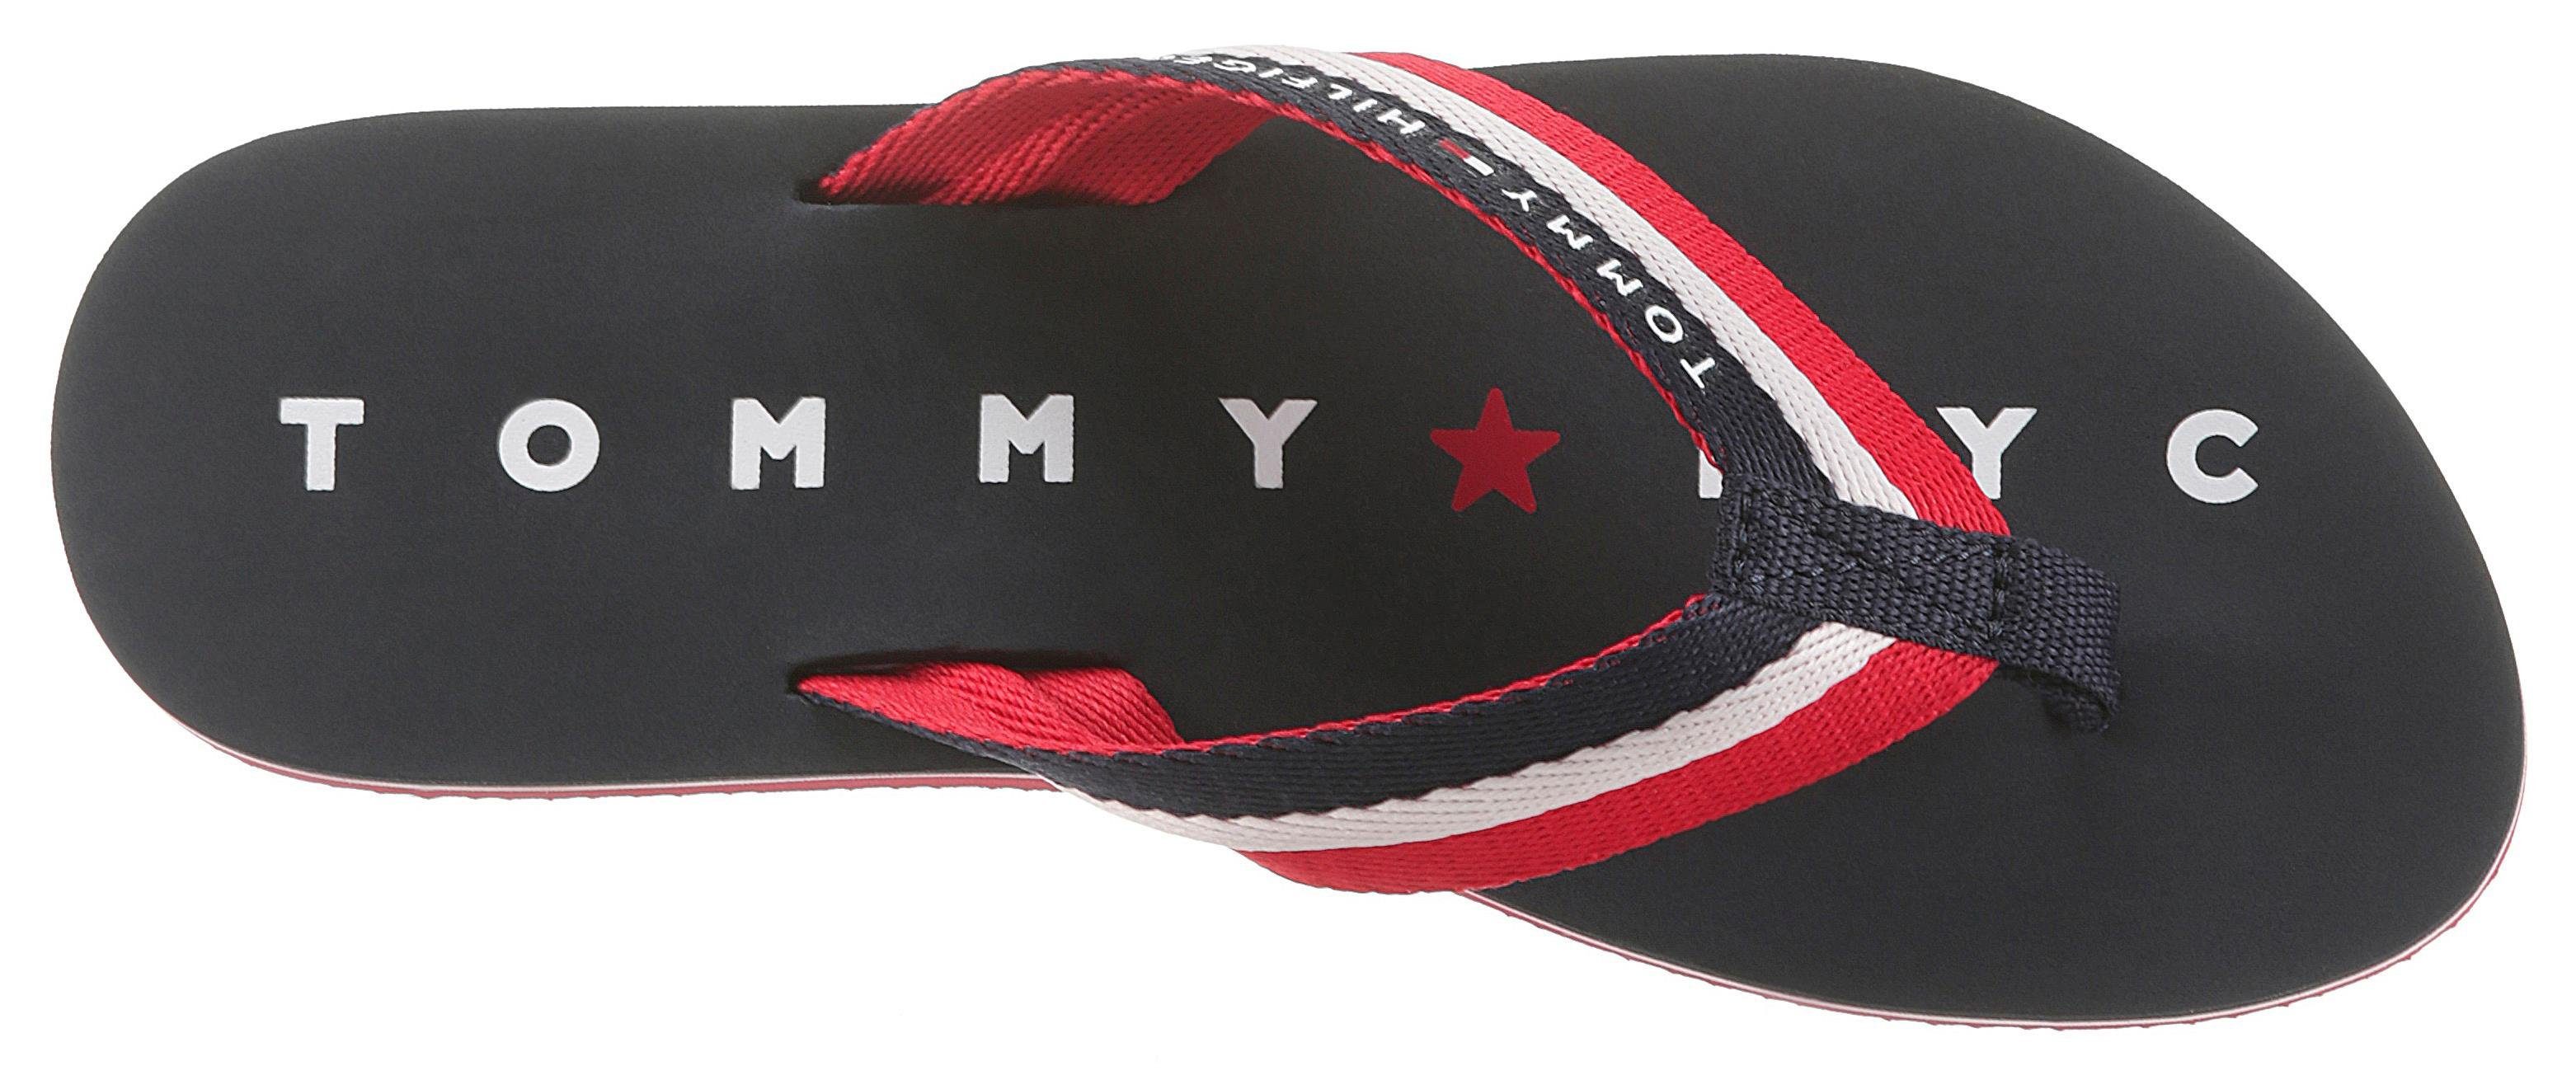 blau-weiß-rot Laufsohle NY Zehentrenner SANDAL Tommy LOVES ausf mit Hilfiger der TOMMY Logo BEACH